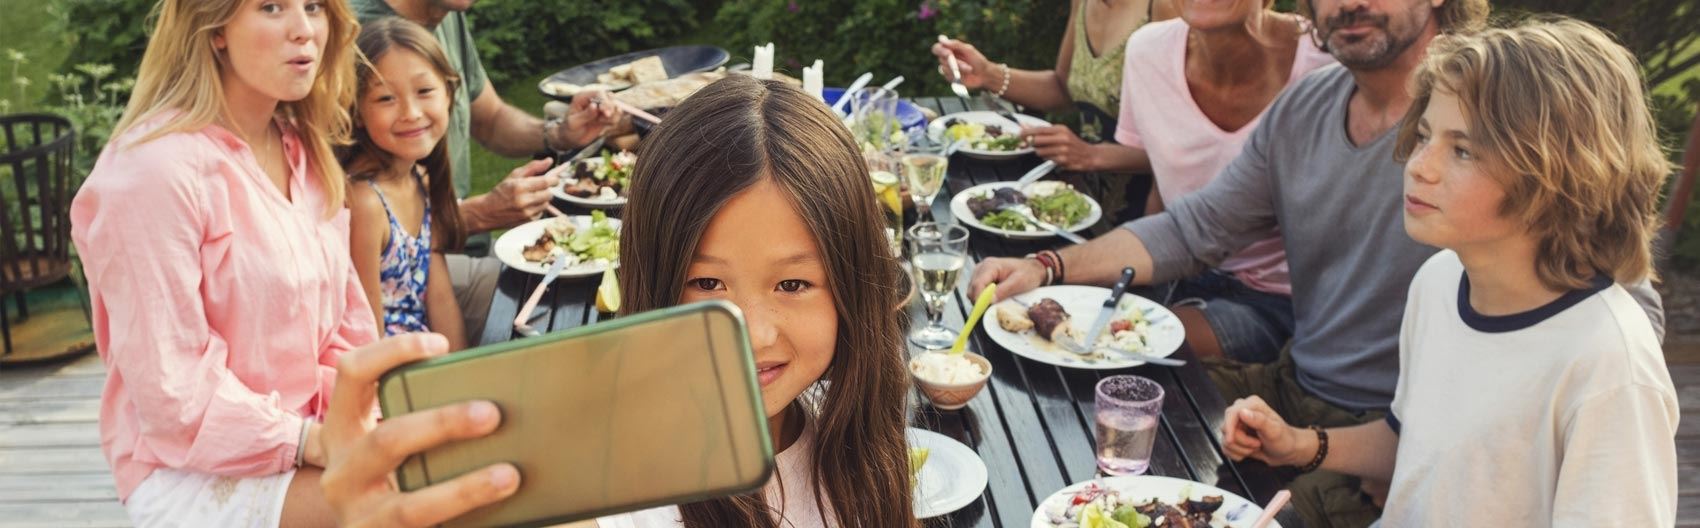 Familj äter middag och barn tar en bild med telefonen